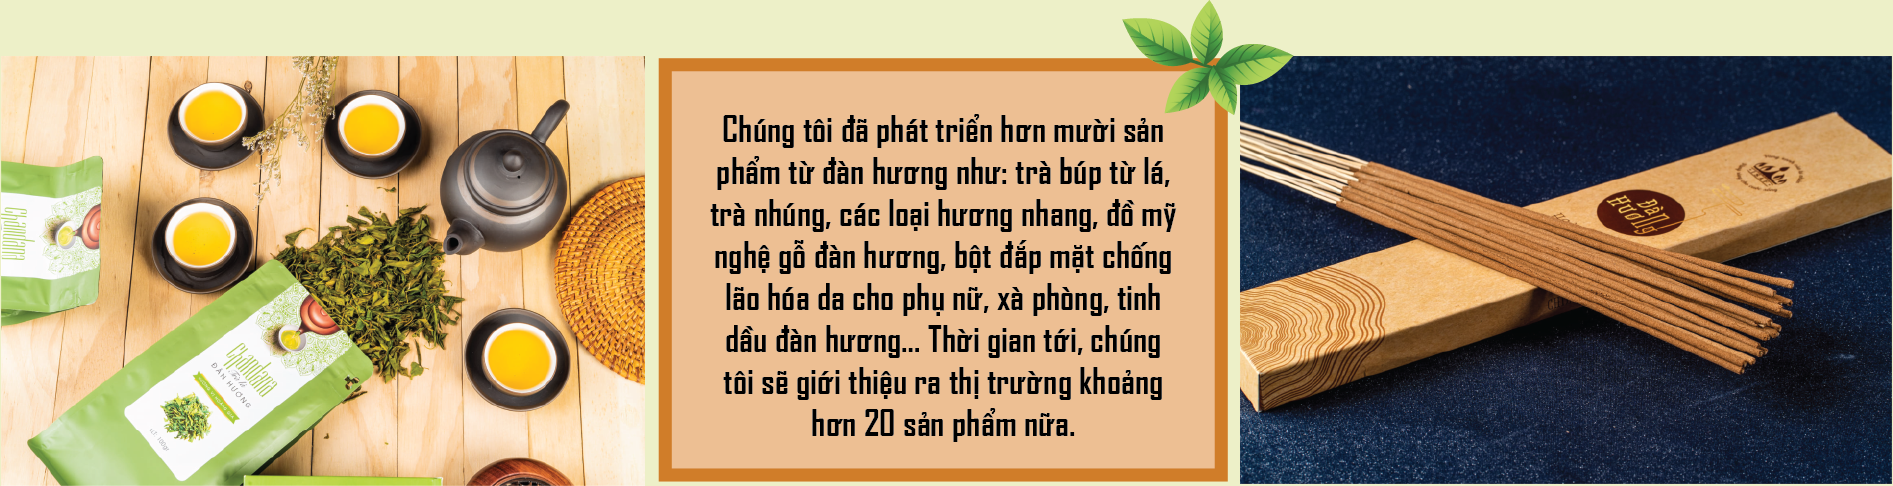 Thầy giáo cầm cuốc: Nâng tầm cây đàn hương Việt - Ảnh 4